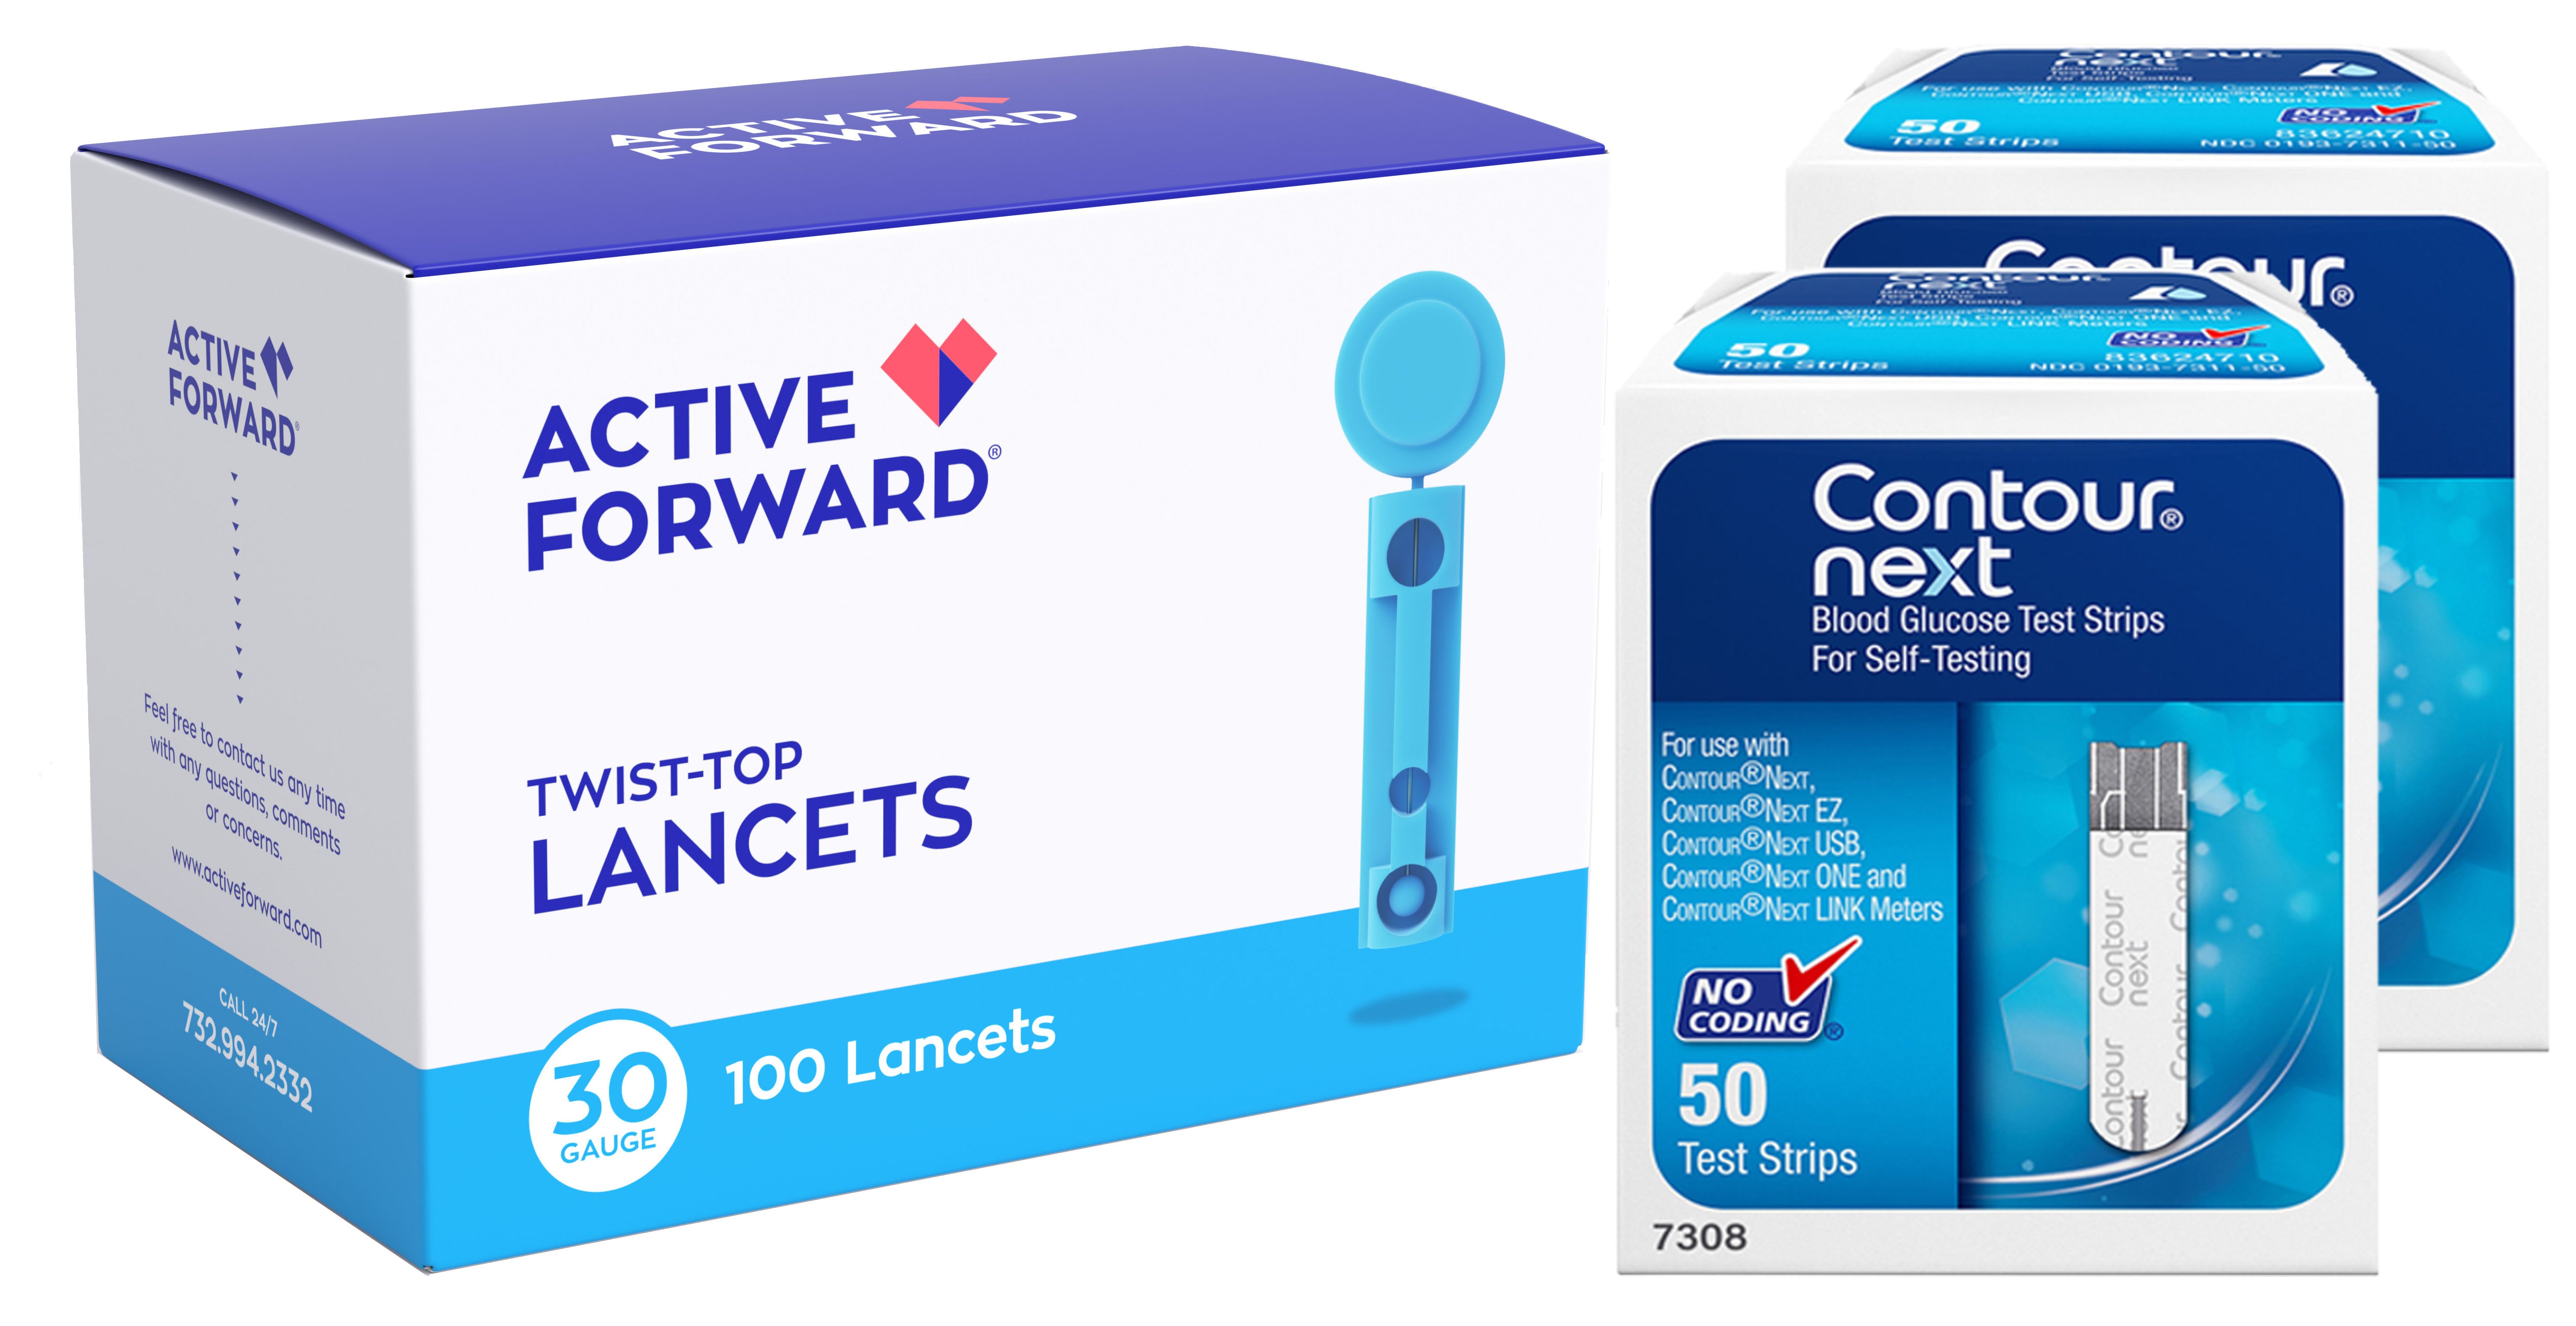 Contour NEXT Blood Glucose Test Strips + Lancets